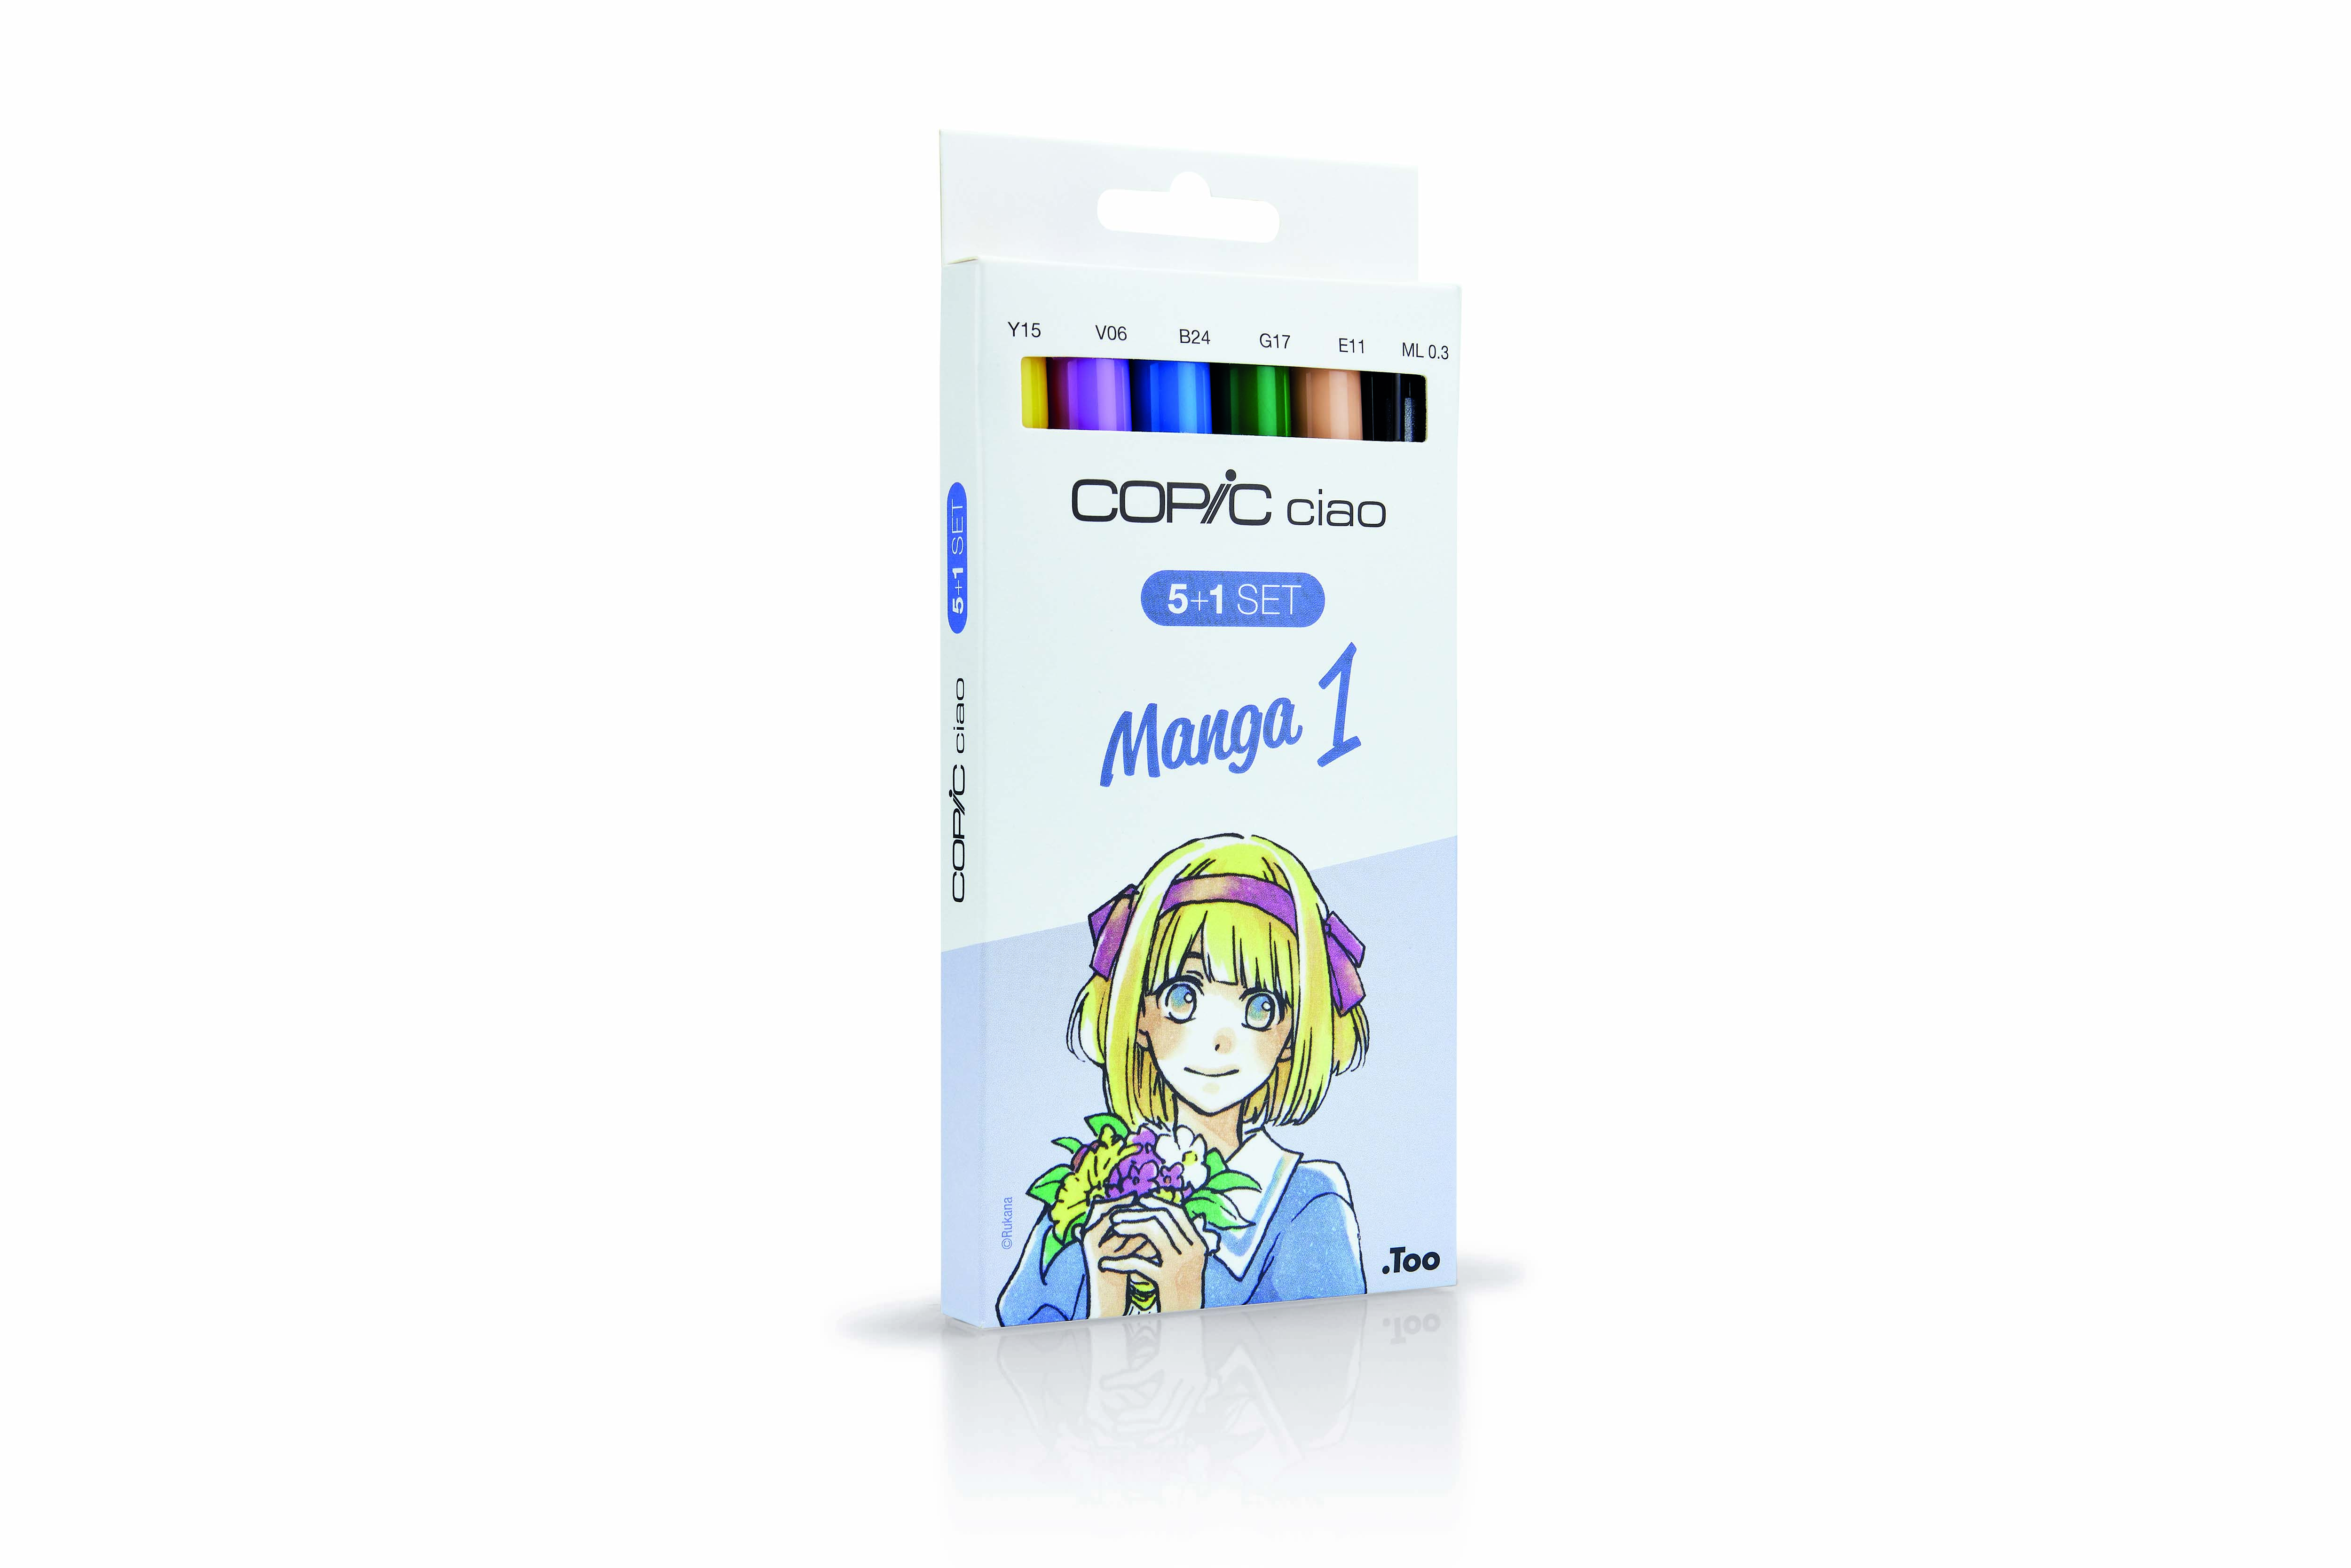 Copic Ciao 5+1 Set Manga 1